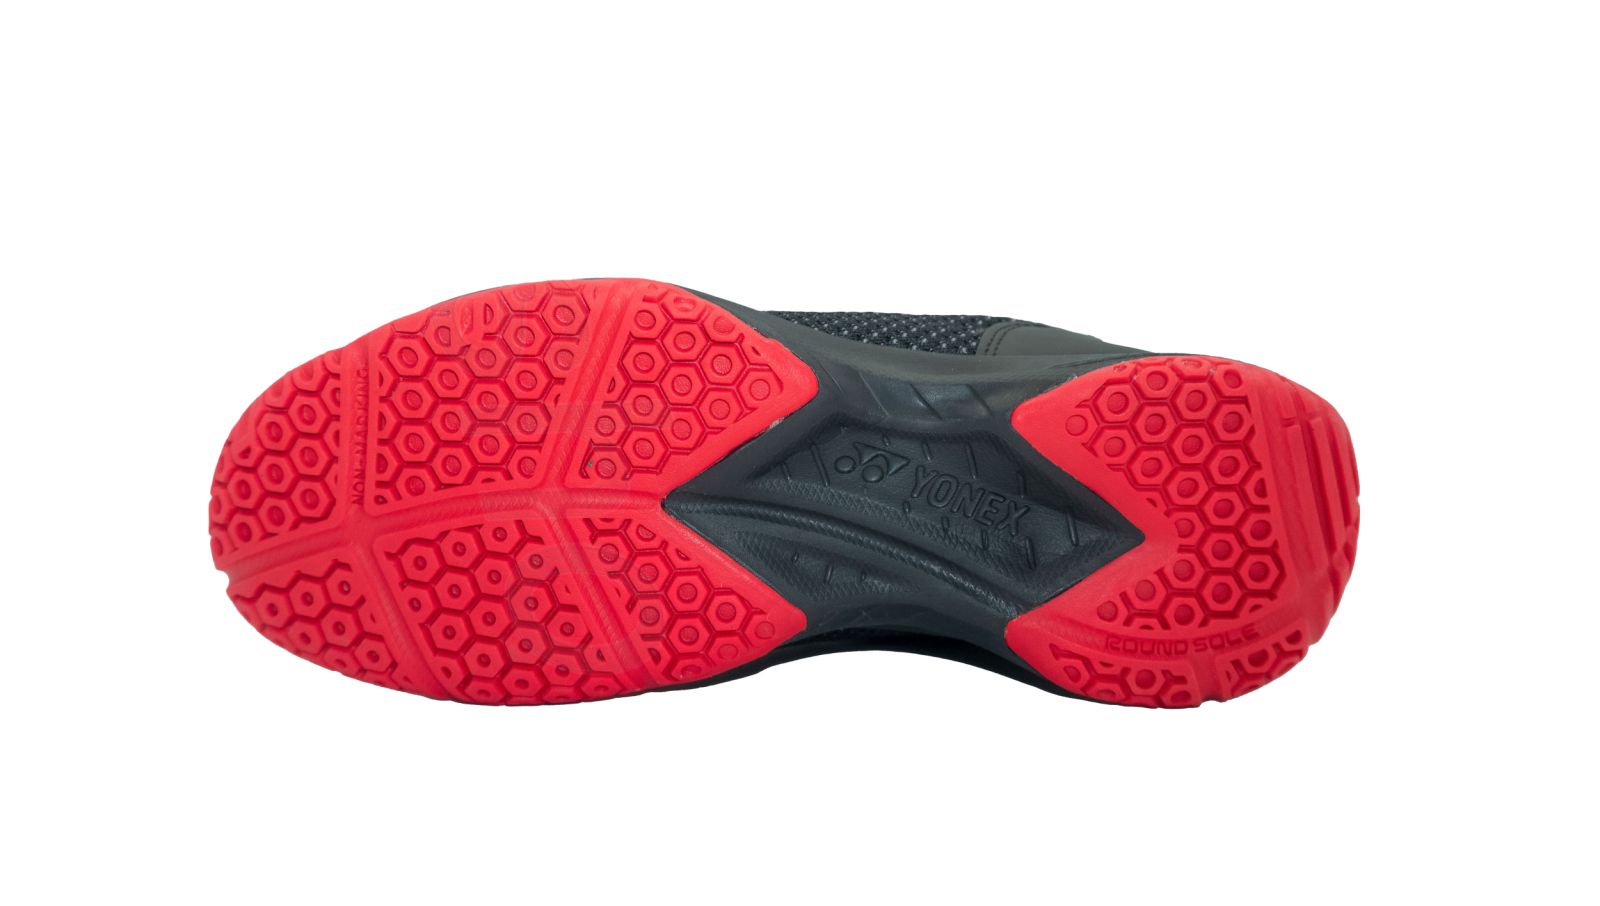 Công nghệ OUTDOOR SOLE của giày cầu lông Yonex